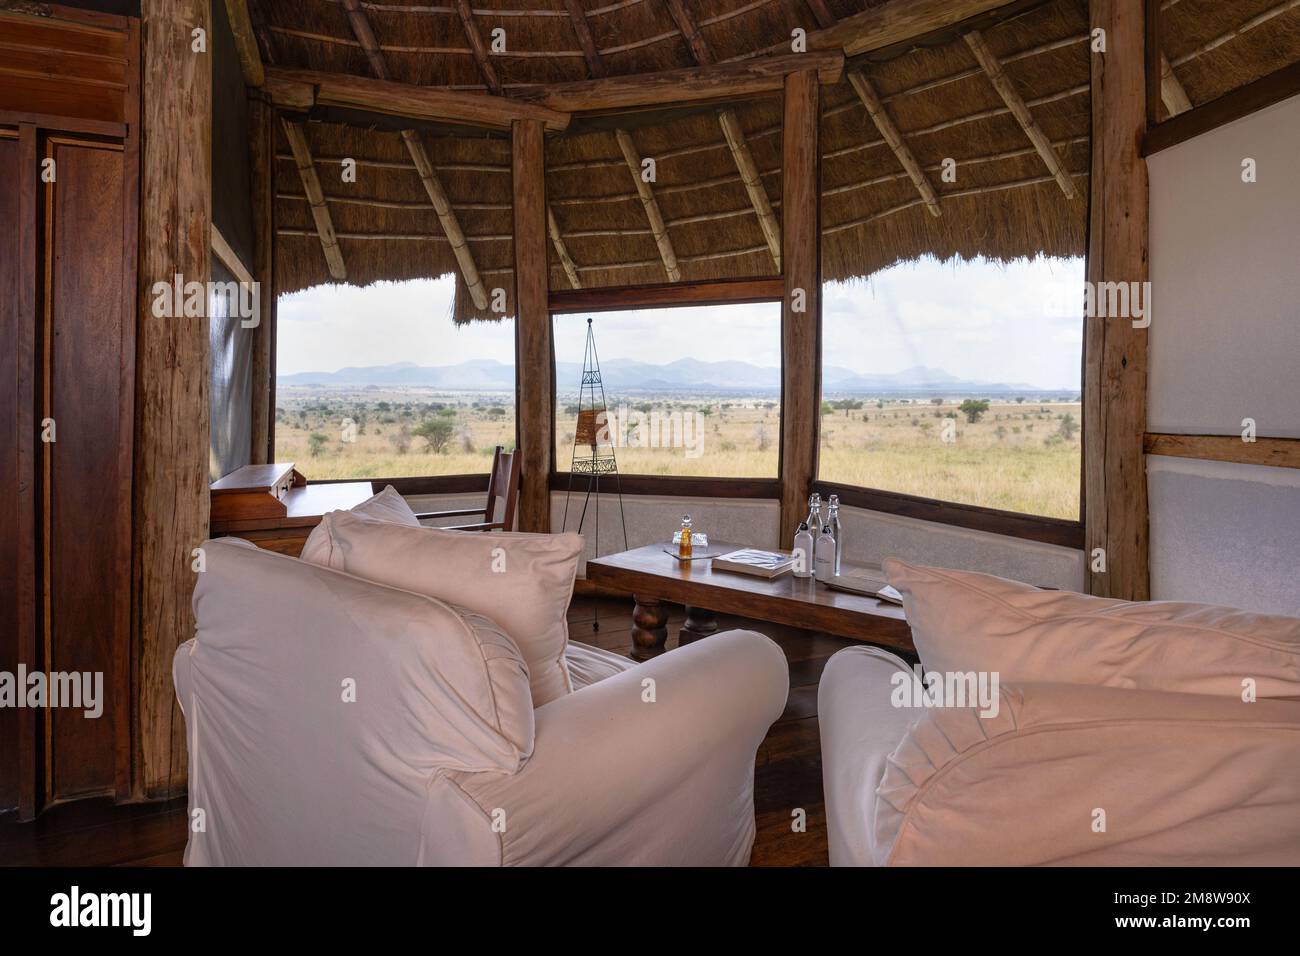 Una delle camere dell'Apoka Safari Lodge nella Valle di Kidepo, Uganda. Questa camera si chiama Katurum. Foto Stock